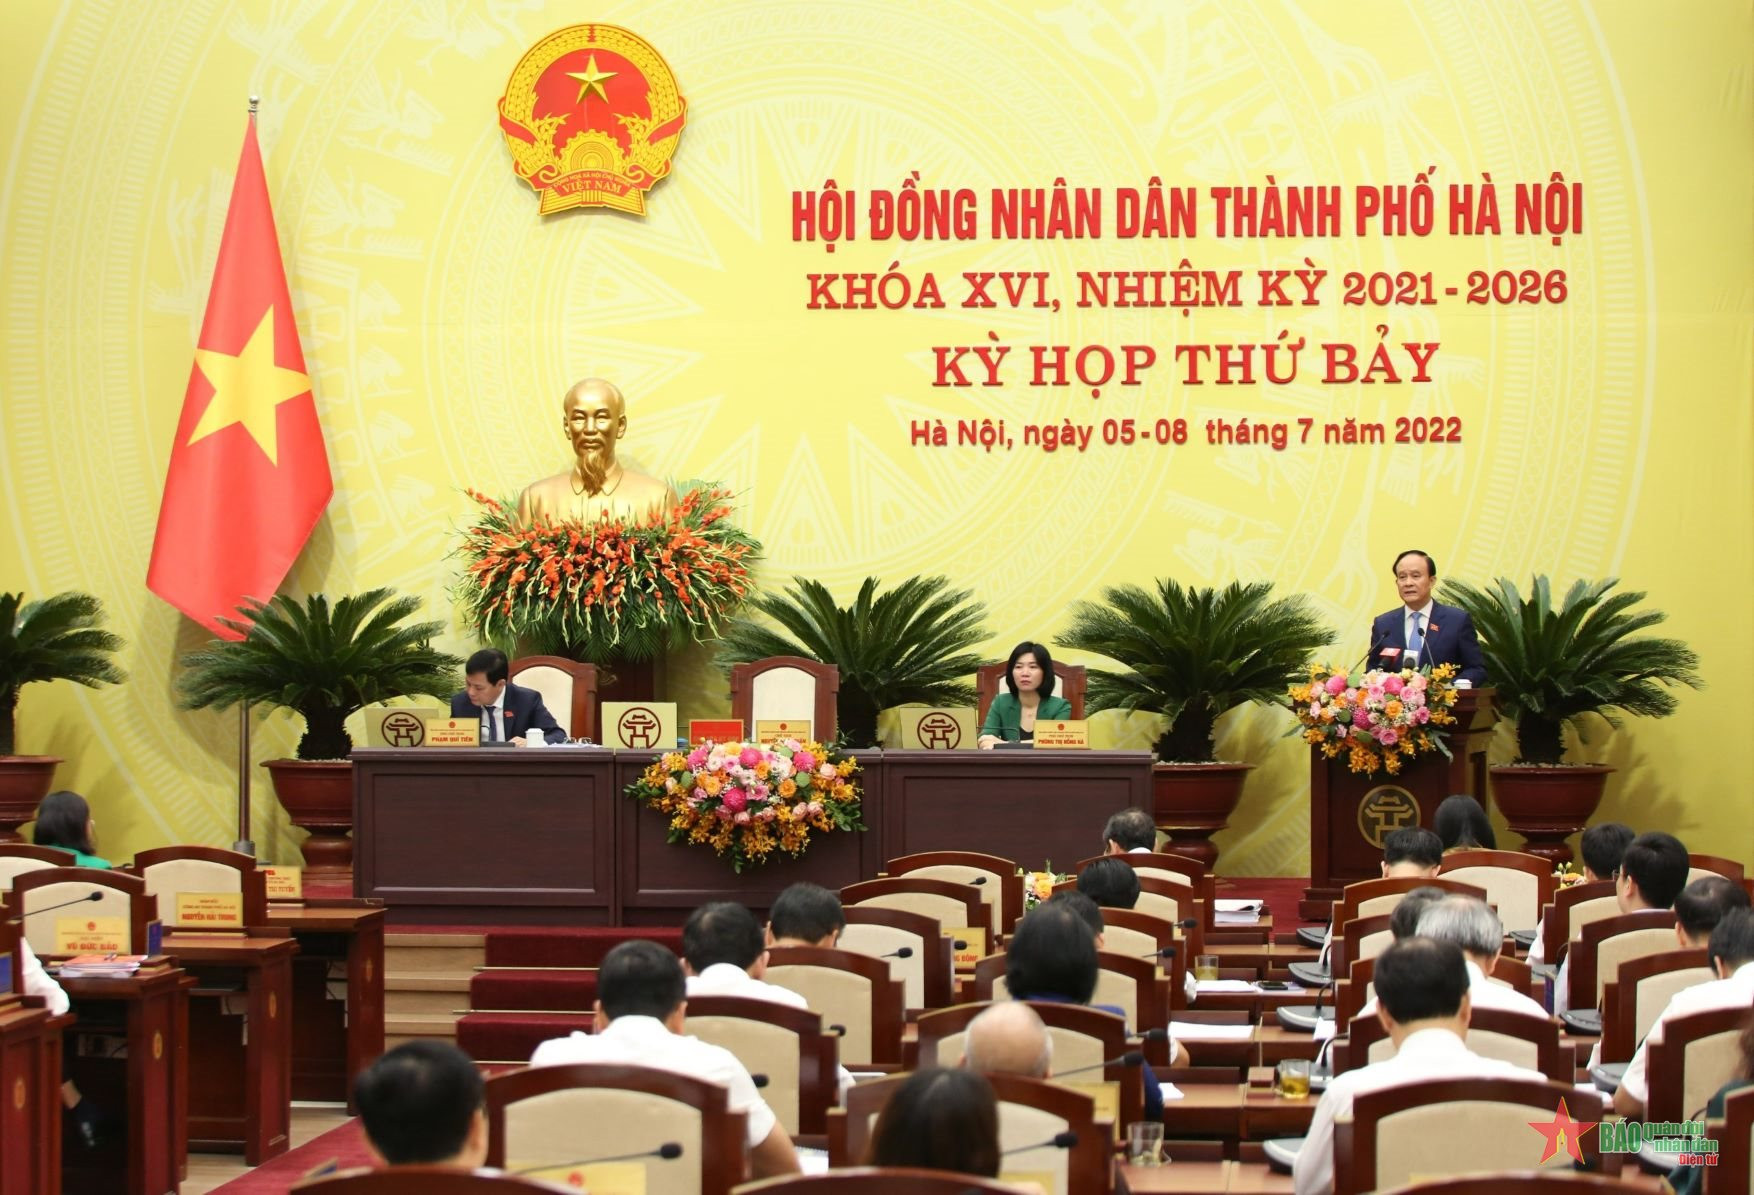 Trao thêm thẩm quyền cho HĐND thành phố Hà Nội: Bảo đảm thực thi hiệu quả Luật Thủ đô